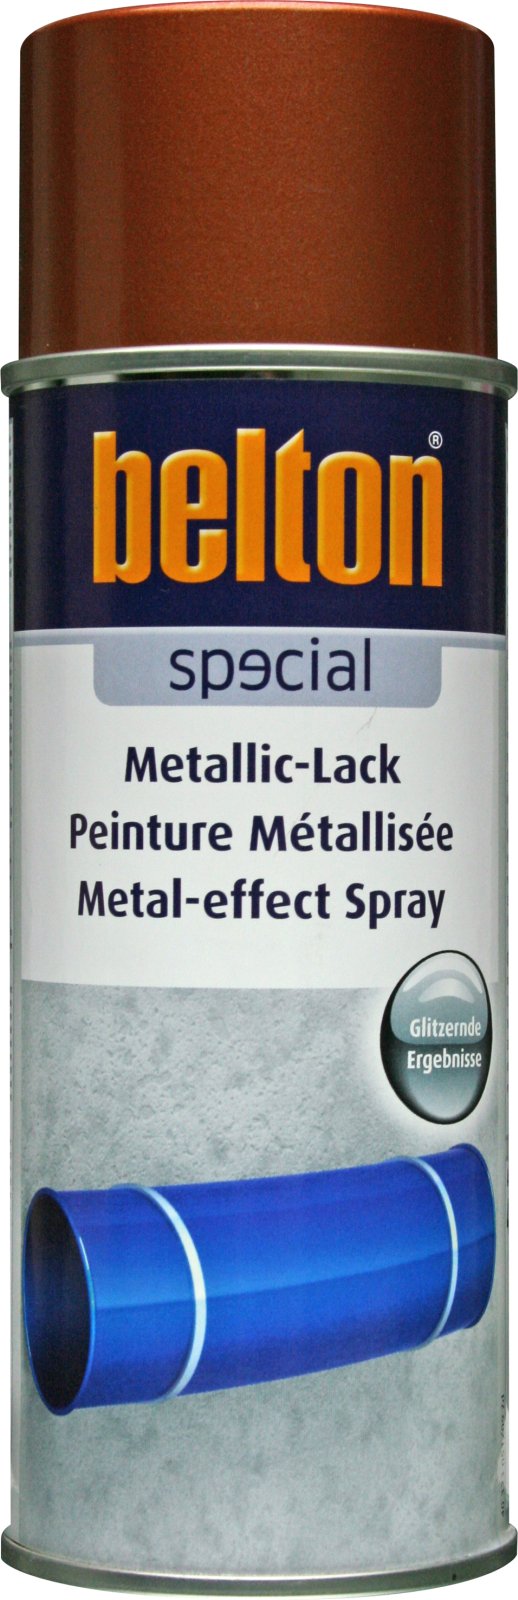 belton Metallic-Lack, kupfer - 400ml